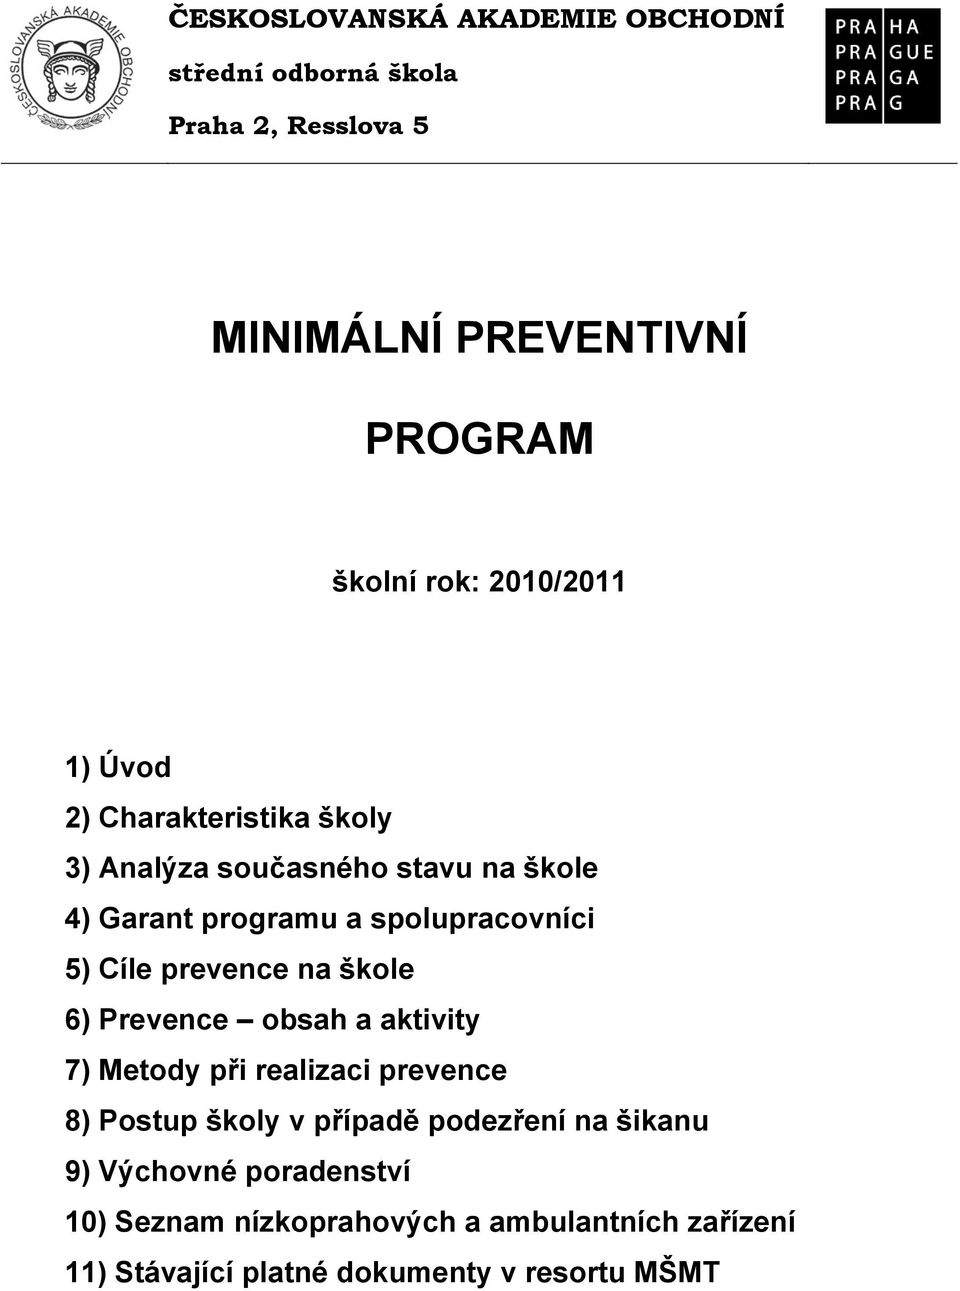 Cíle prevence na škole 6) Prevence obsah a aktivity 7) Metody při realizaci prevence 8) Postup školy v případě podezření